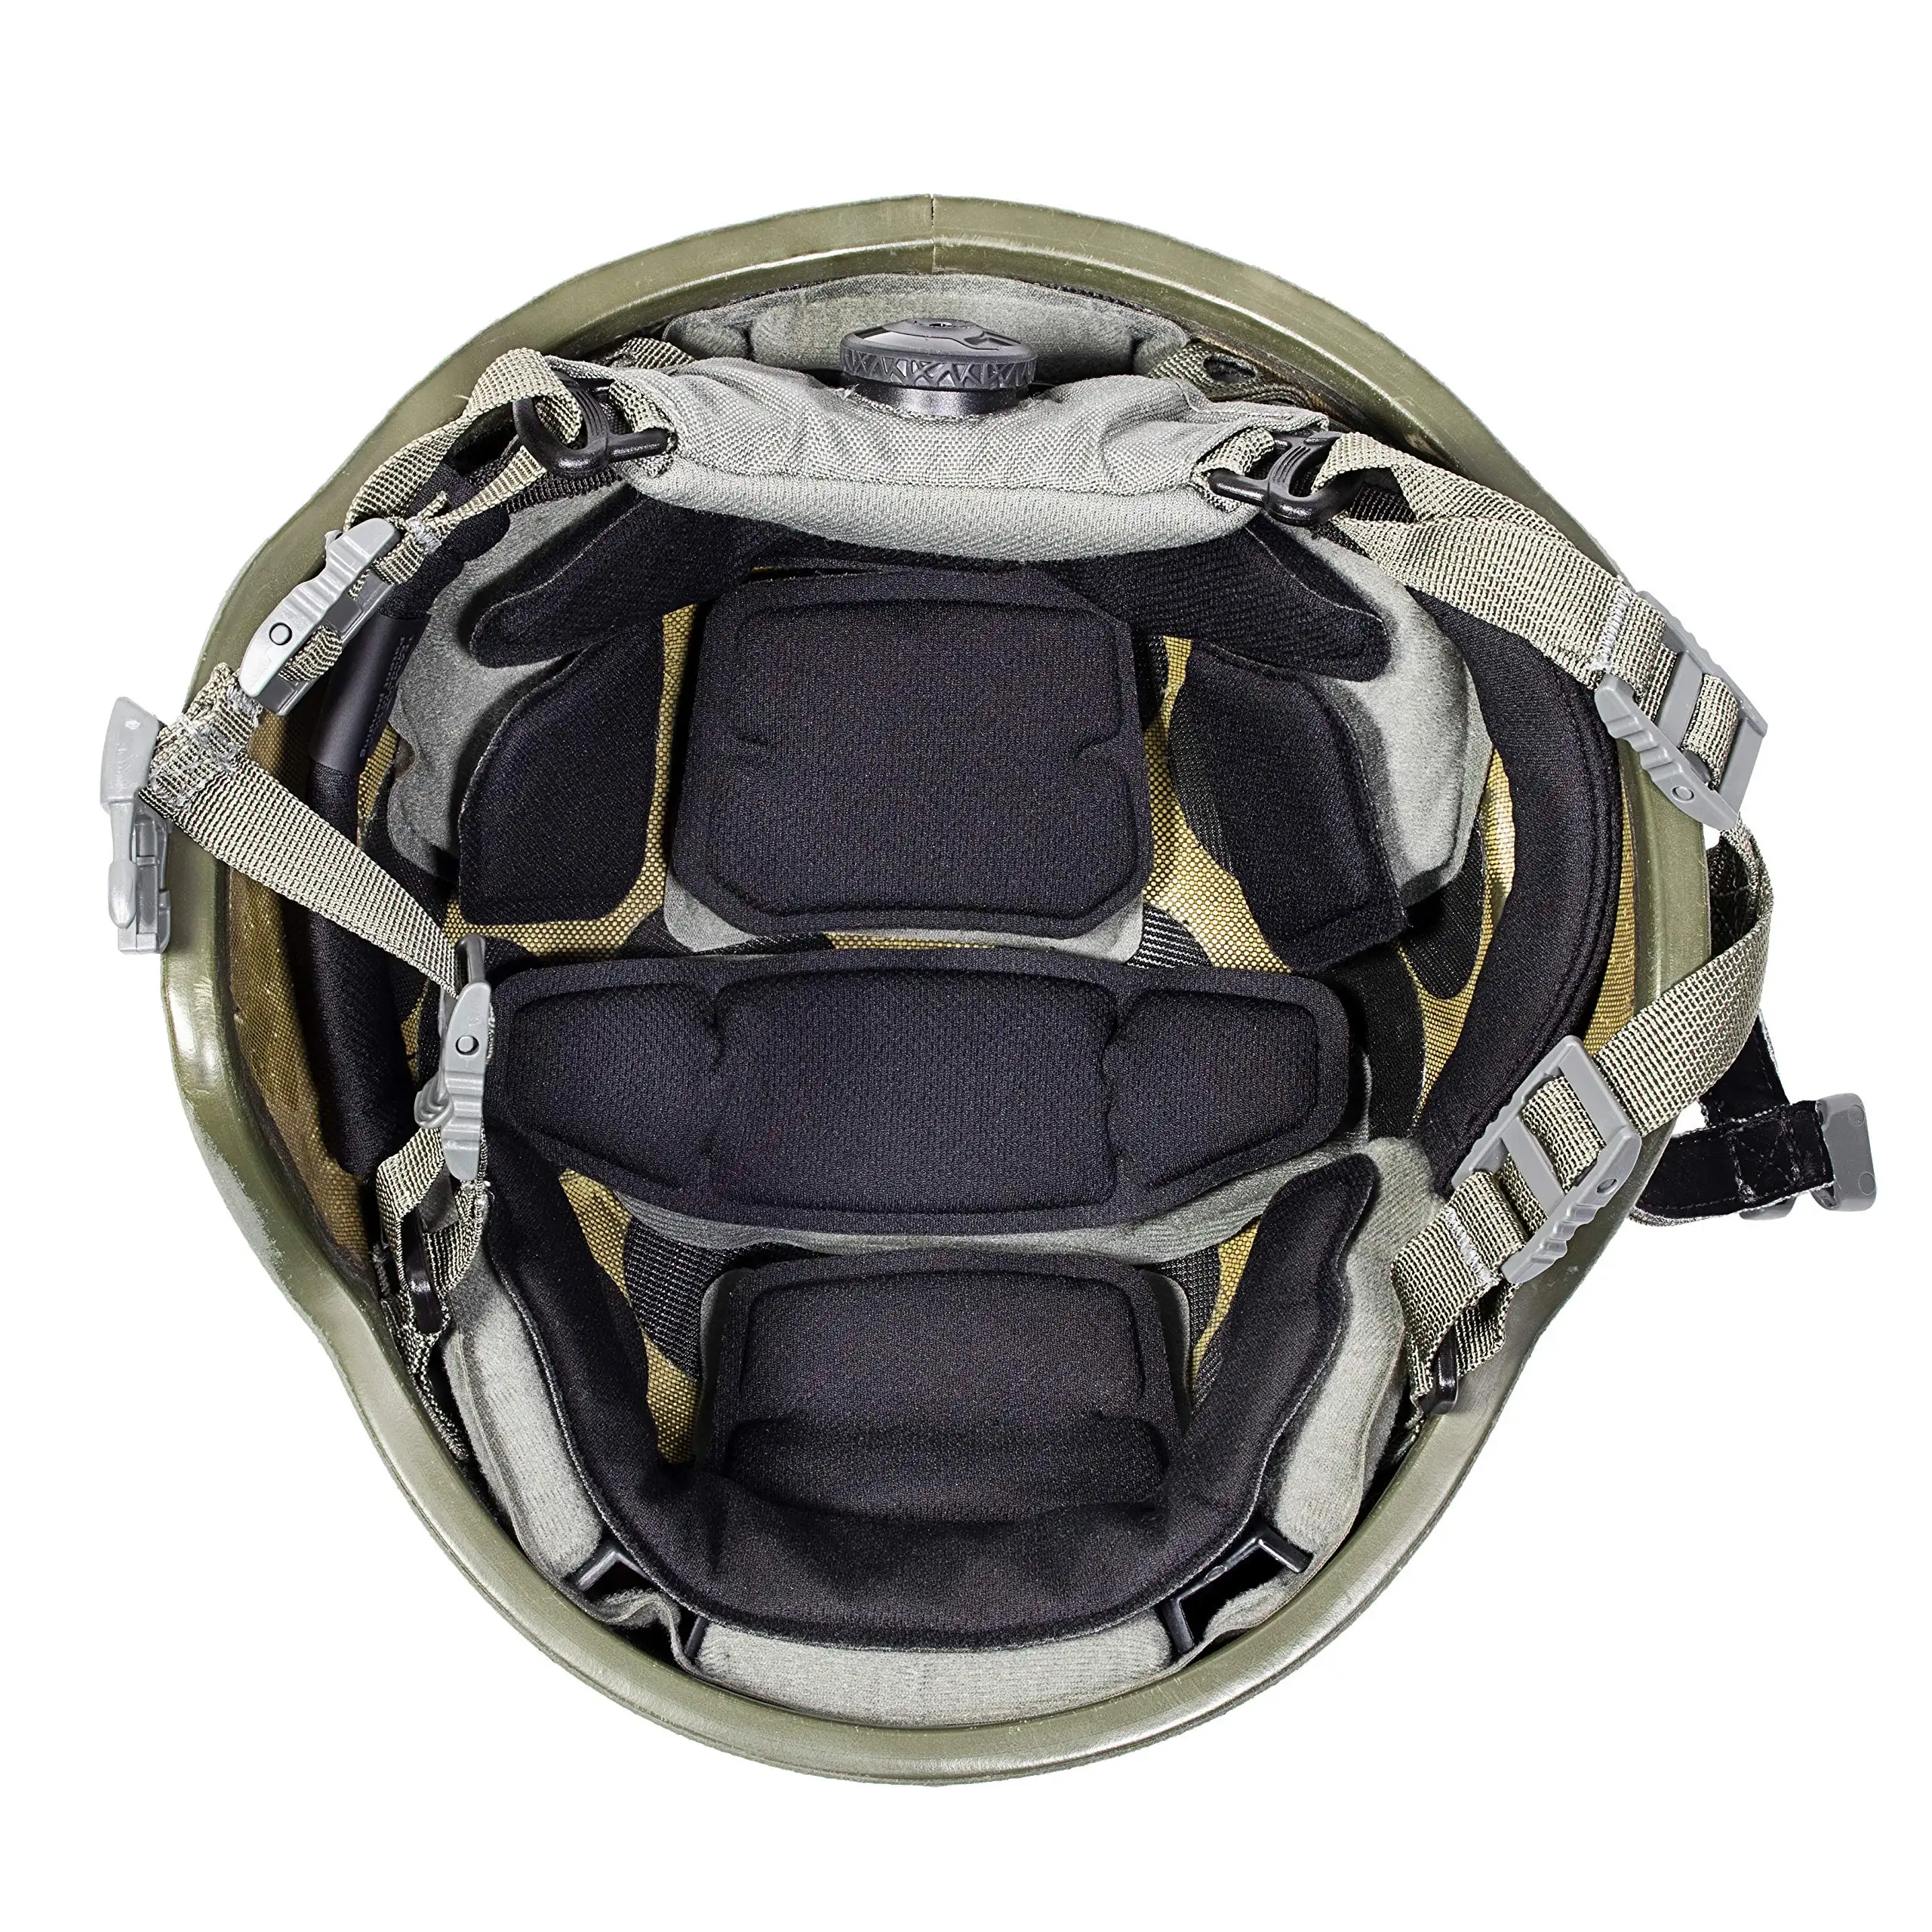 Kit de relleno interior de espuma para casco, almohadillas de protección suave OEM y ODM, Logo personalizado, Universal